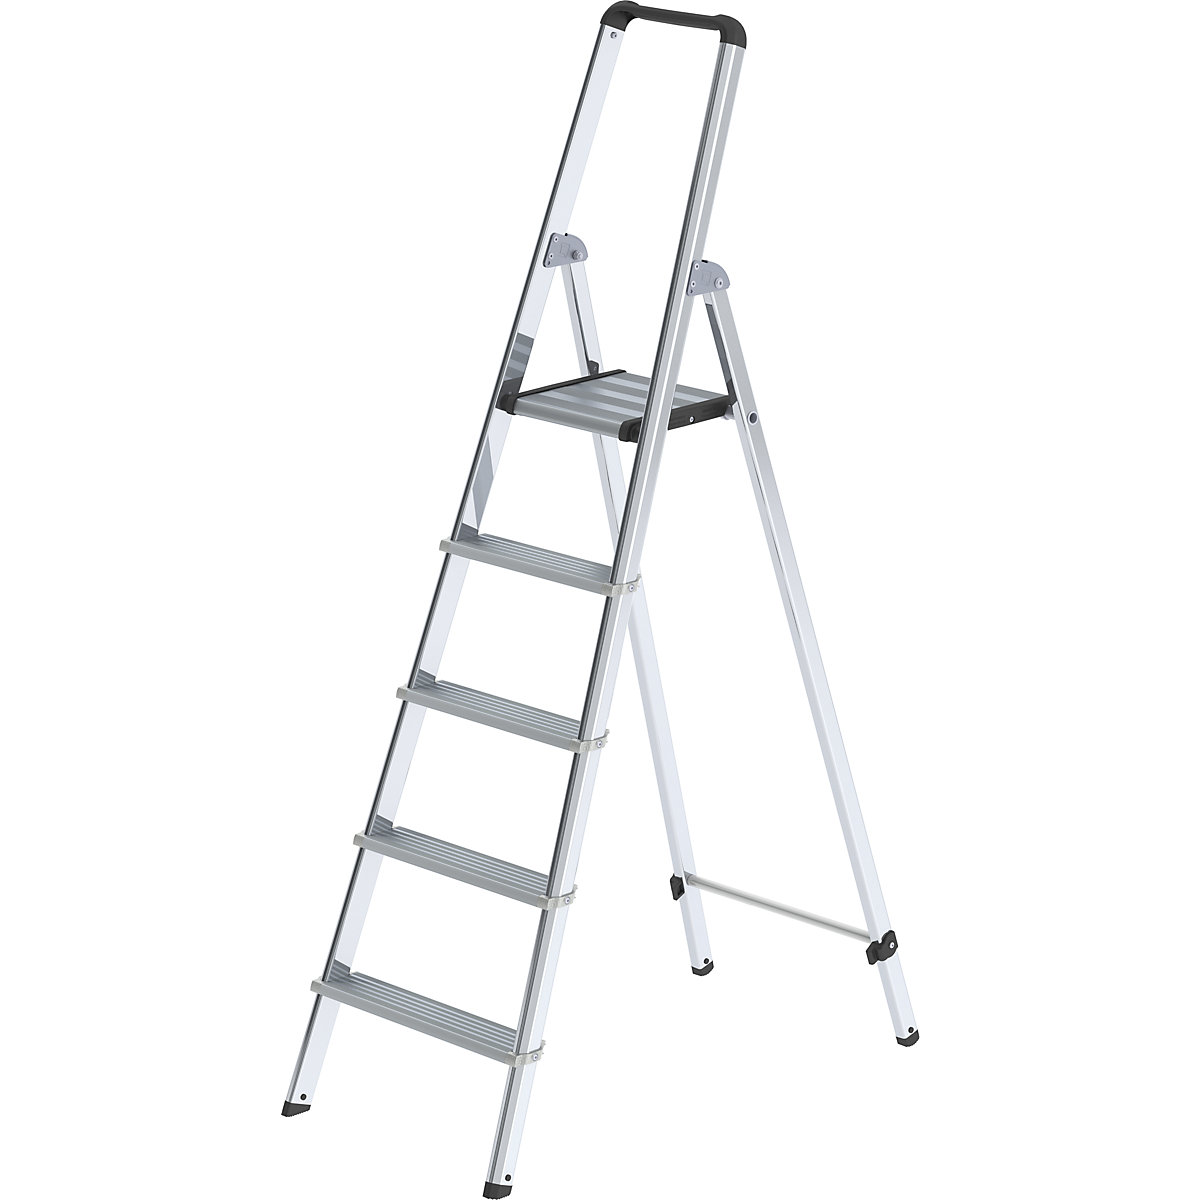 Hliníkový stojaci rebrík so stupňami, pochôdzny z jednej strany - MUNK